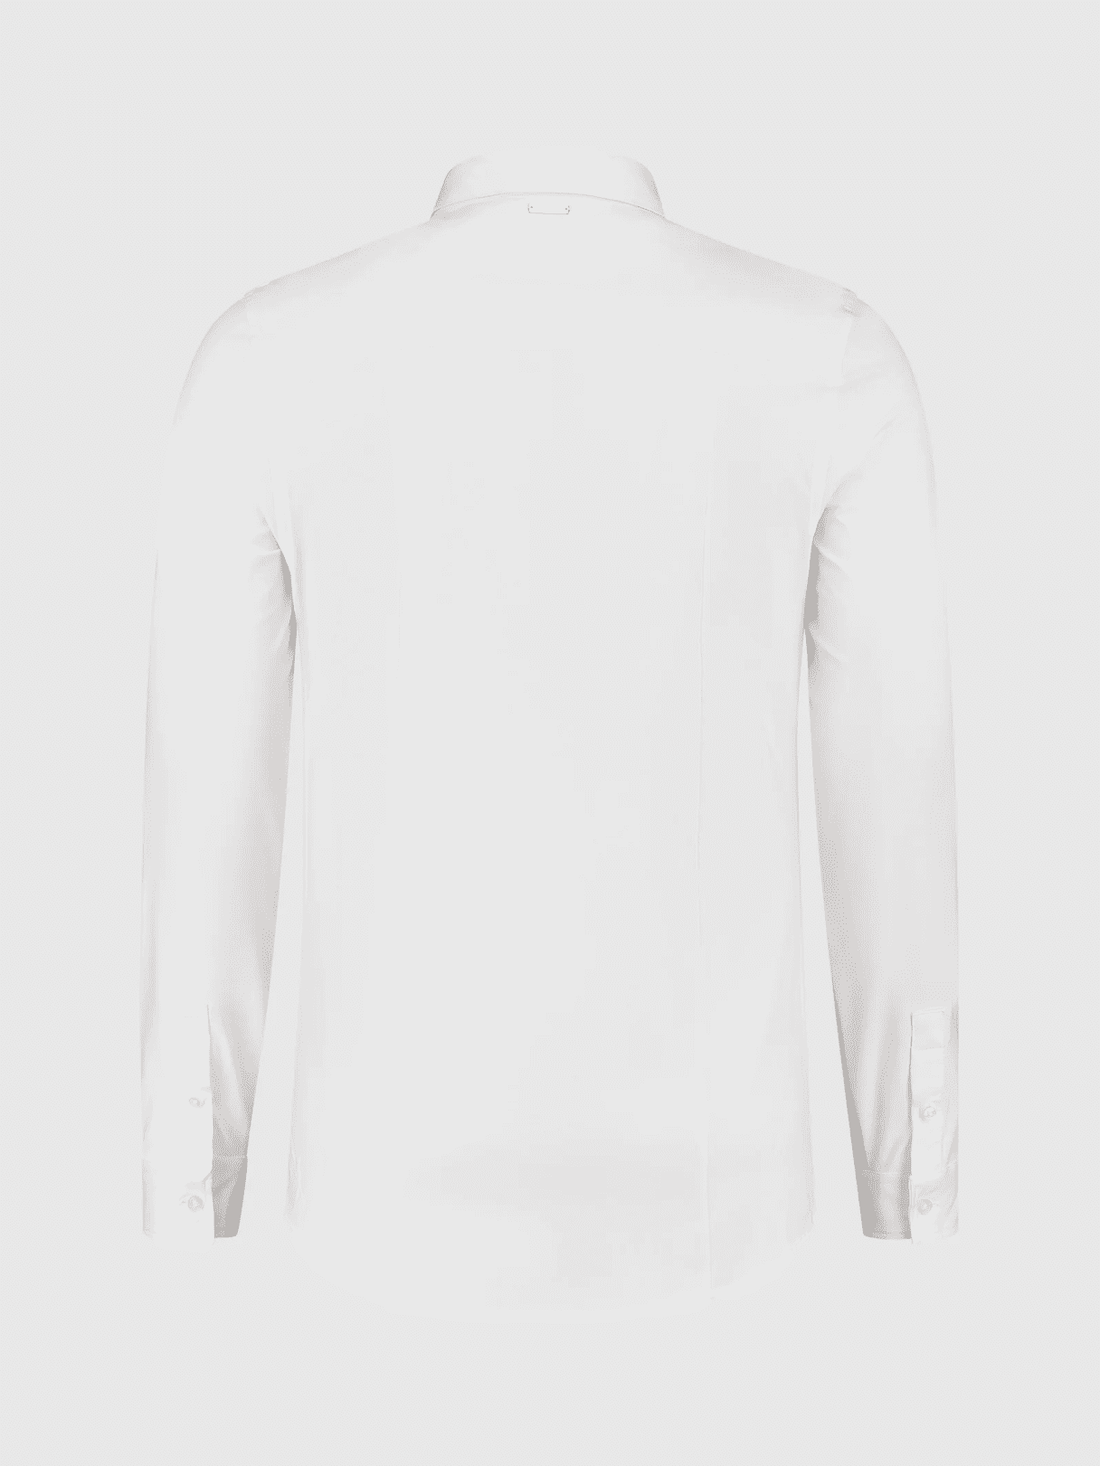 Basis shirt in White